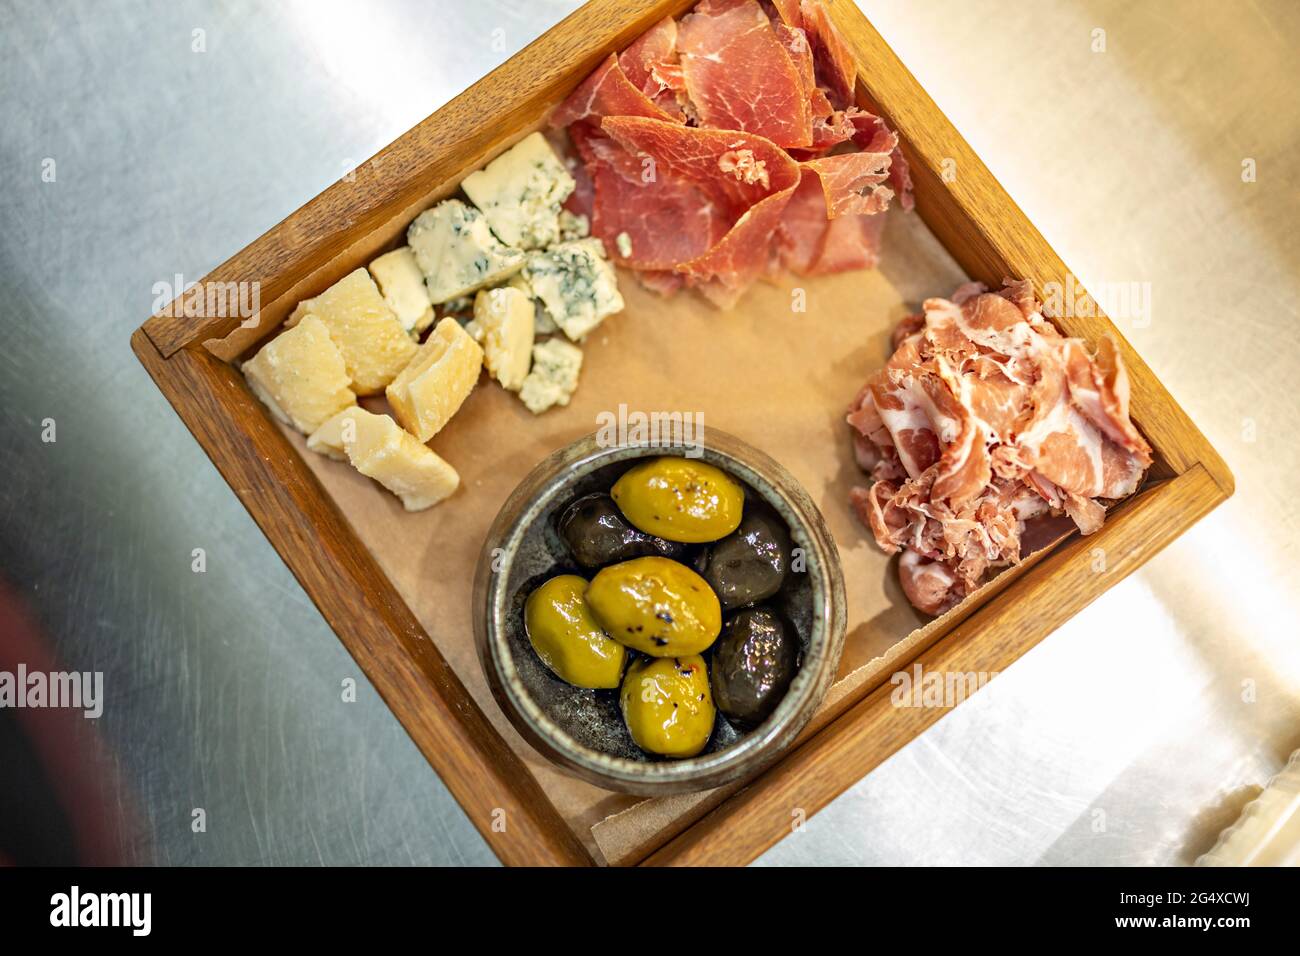 Oliva verde y negro servido con carne roja y queso en bandeja de madera Foto de stock